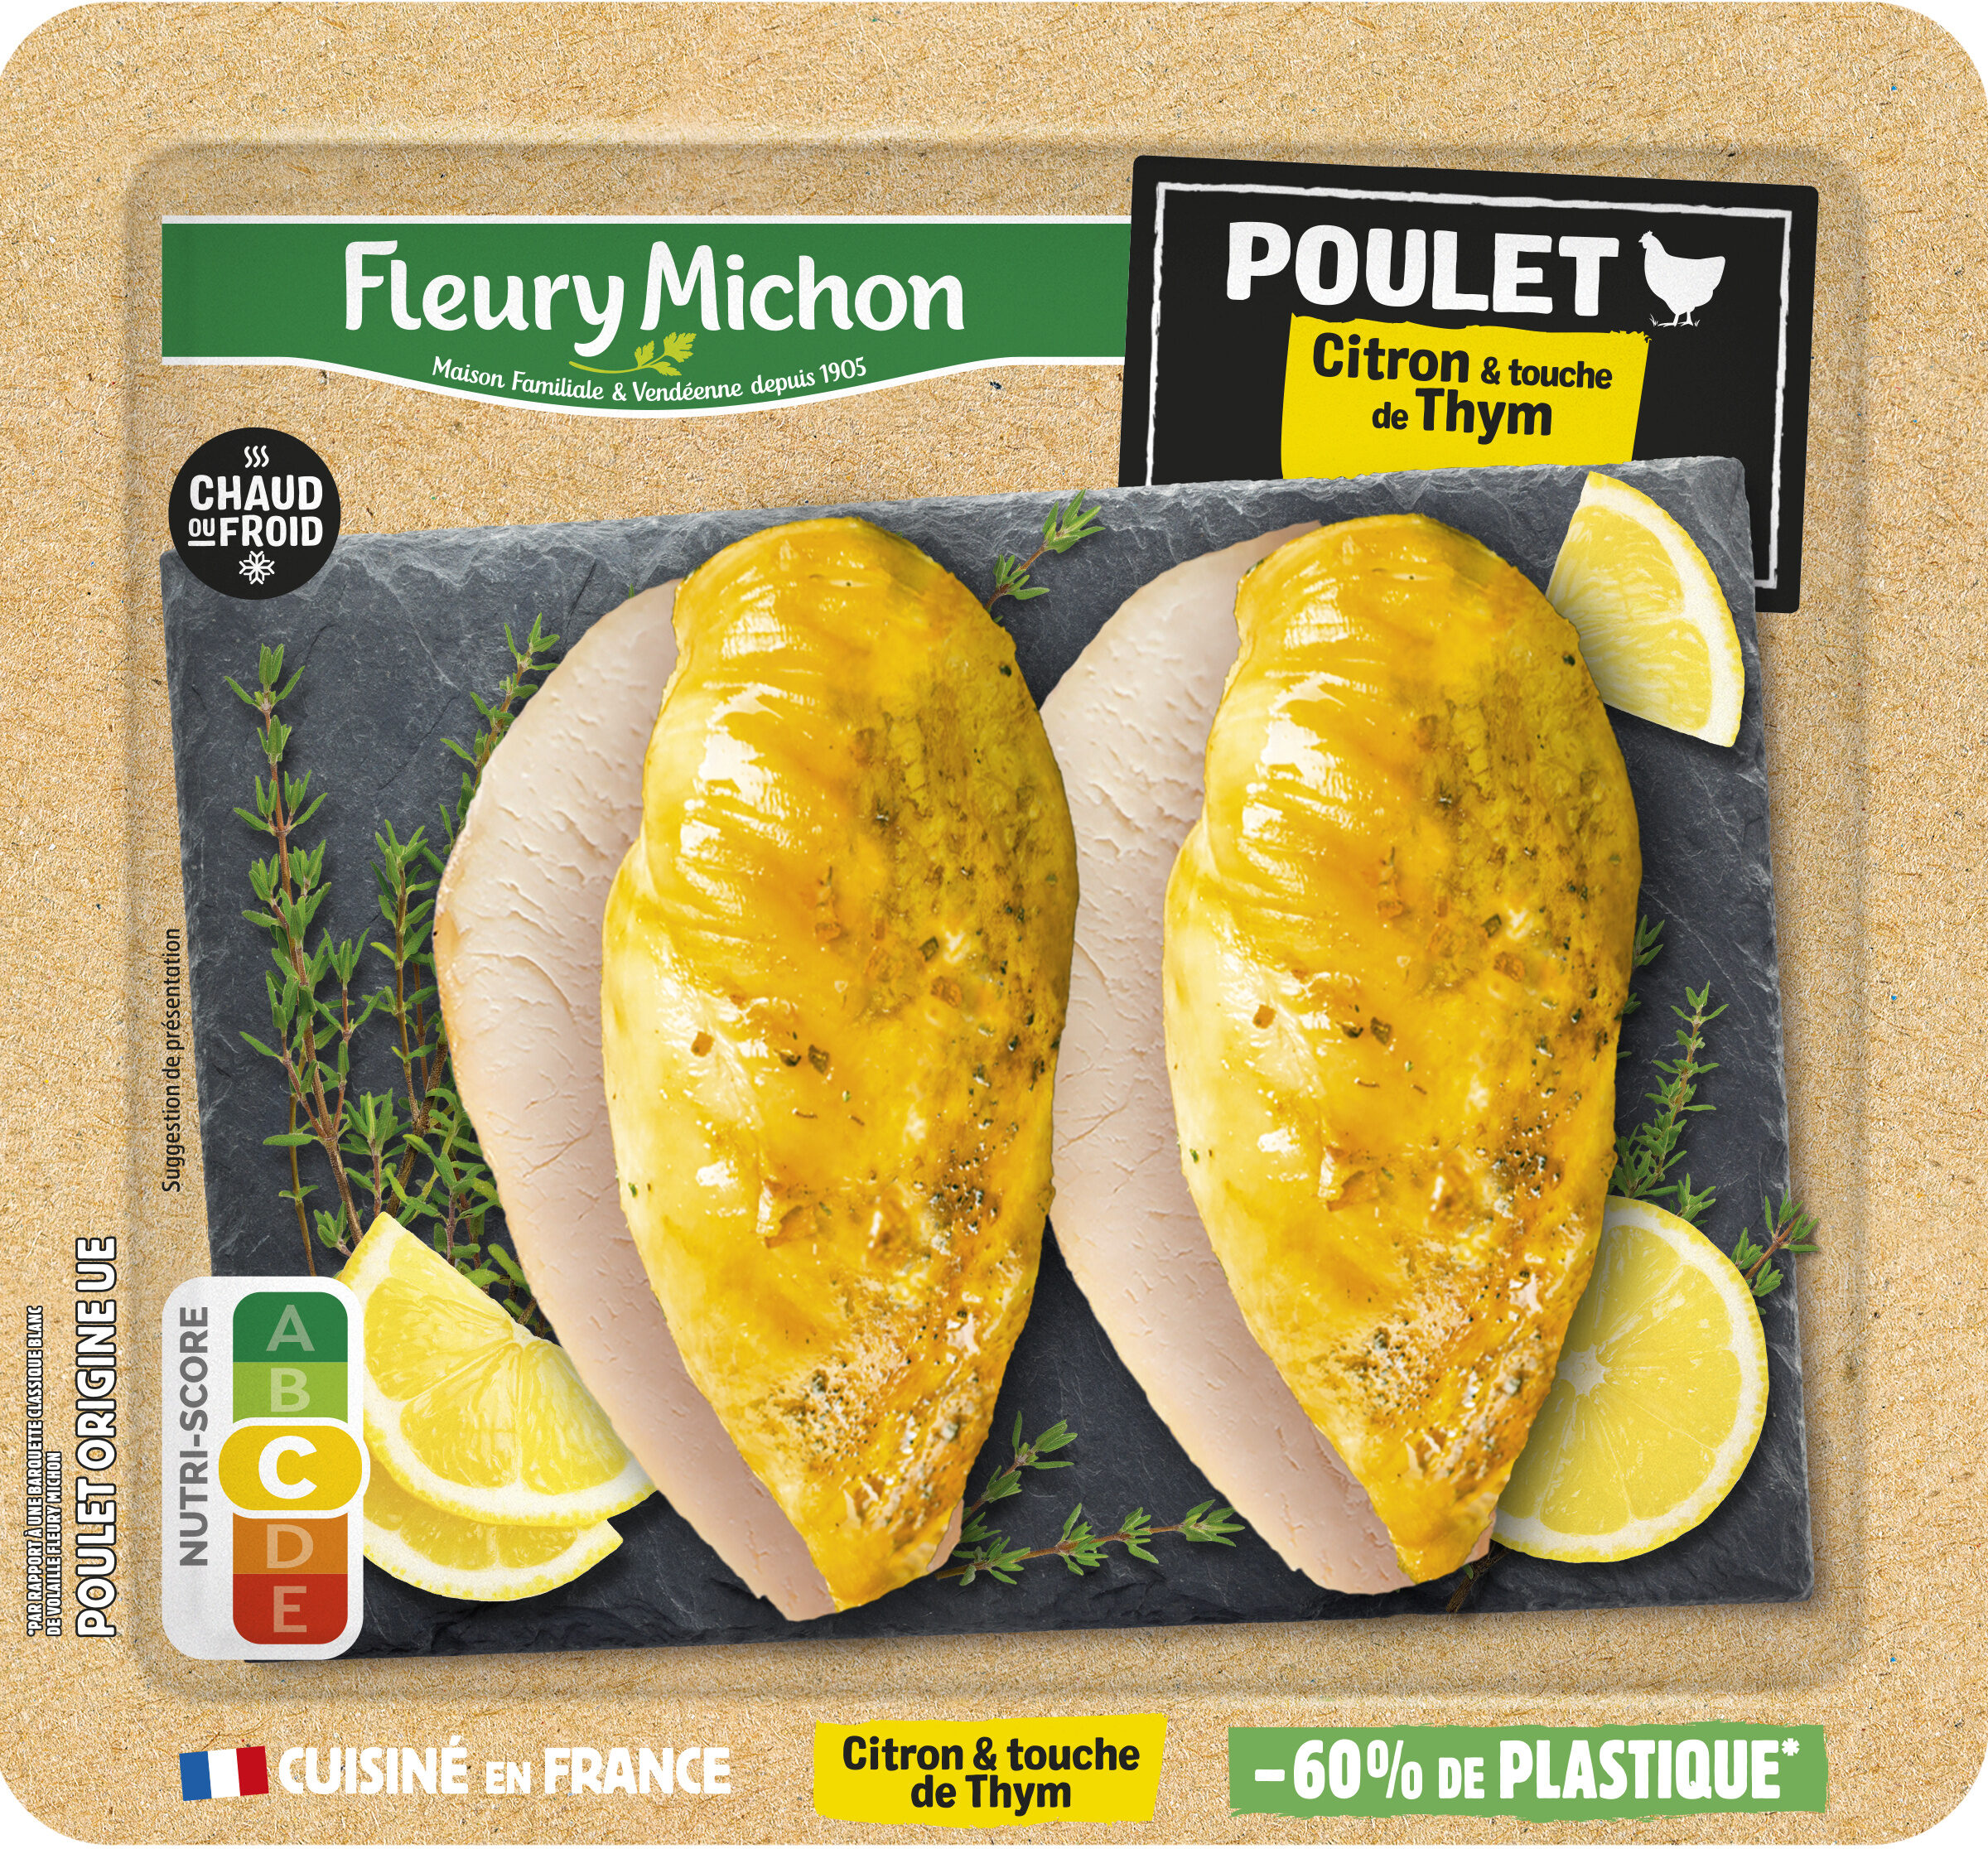 Poulet - Citron & touche de Thym - Produit - fr